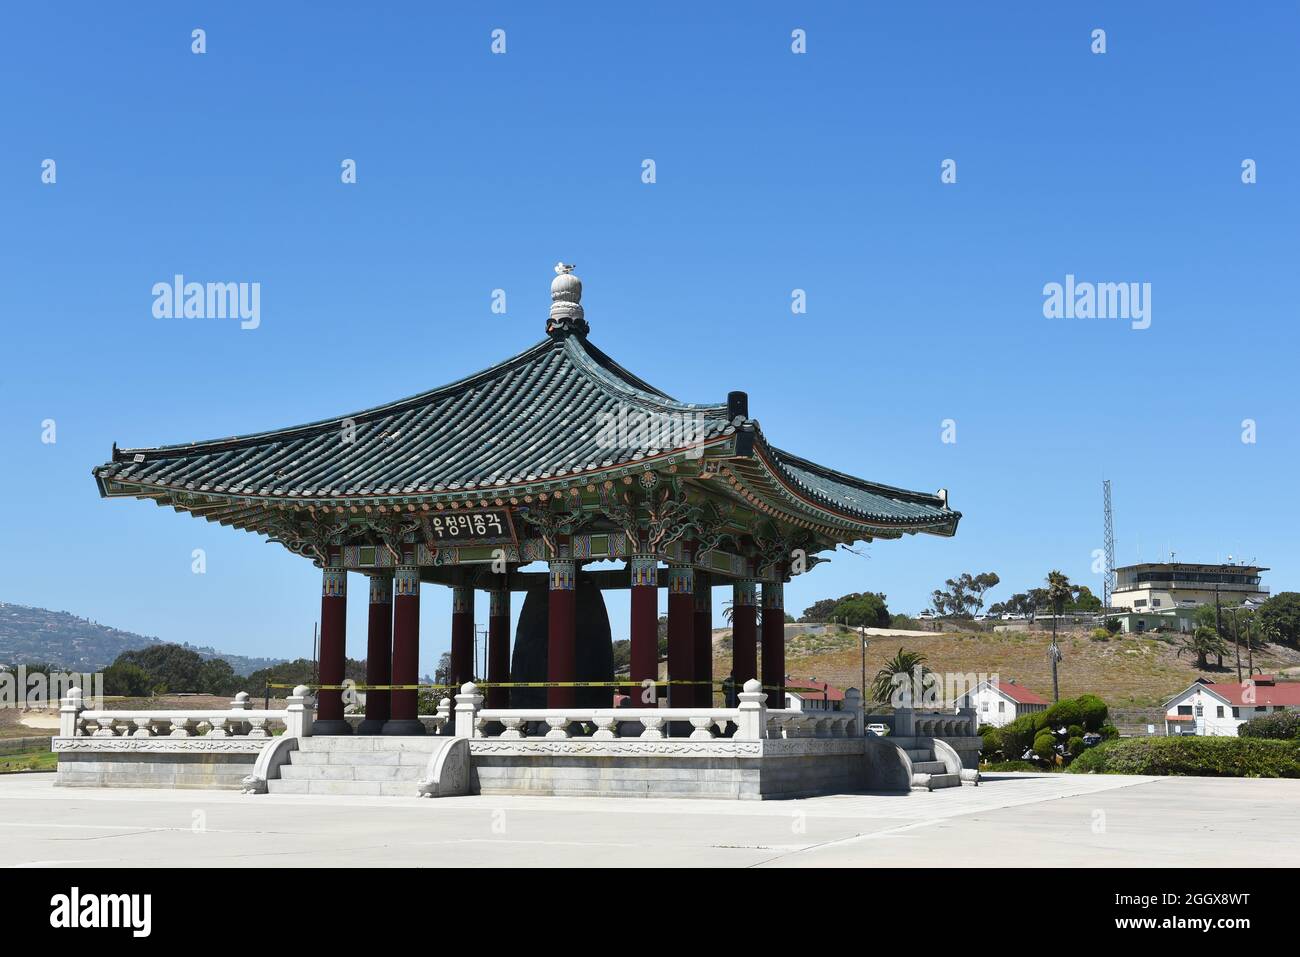 SAN PEDRO, CALIFORNIA - 27 AGO 2021: La campana coreana dell'amicizia è una campana di bronzo massiccia ospitata in un padiglione di pietra nell'Angel's Gate Park. Foto Stock